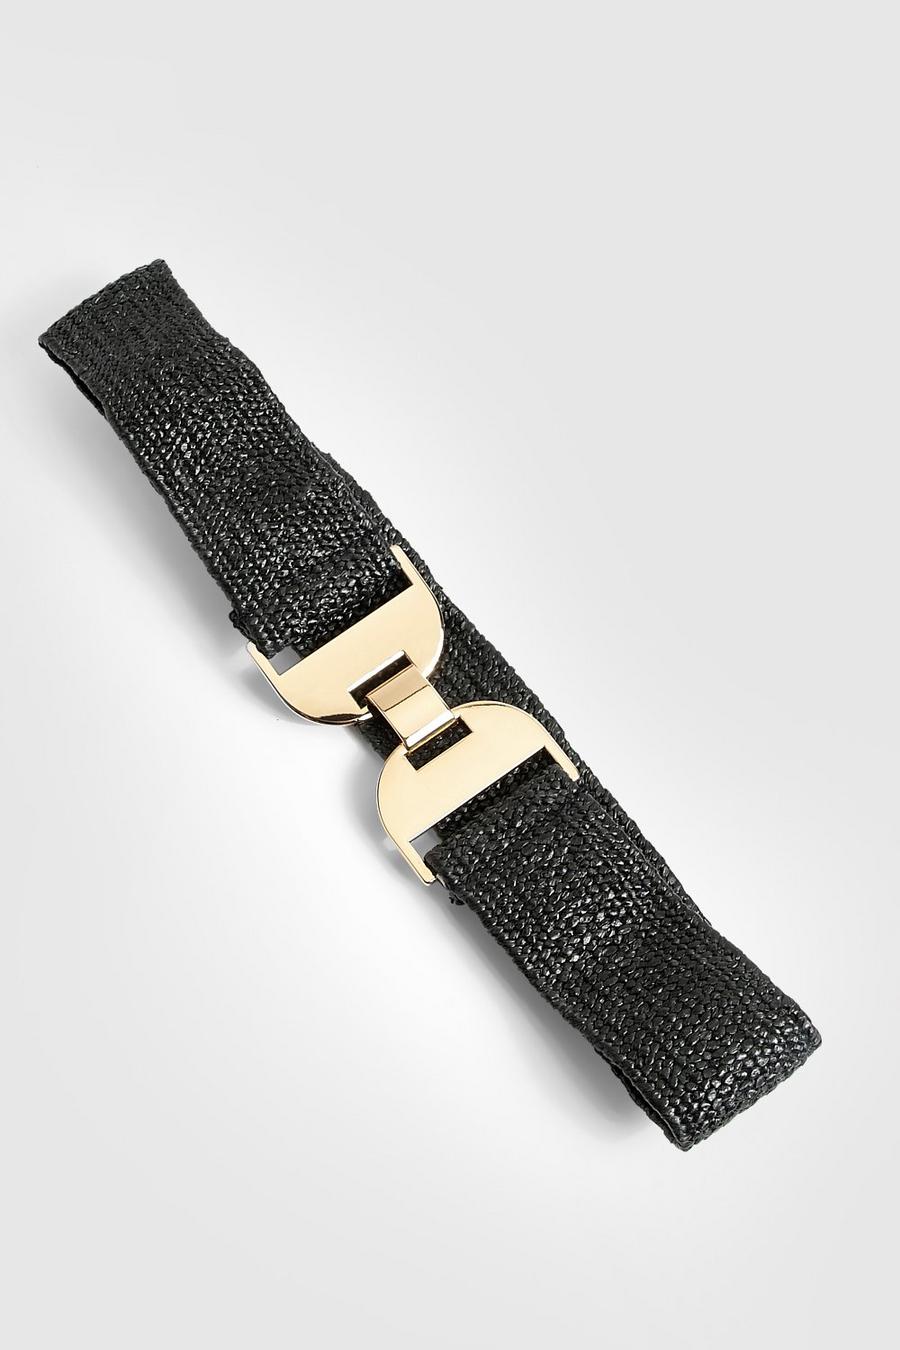 Cintura in vita elasticizzata con chiusura in metallo, Black negro